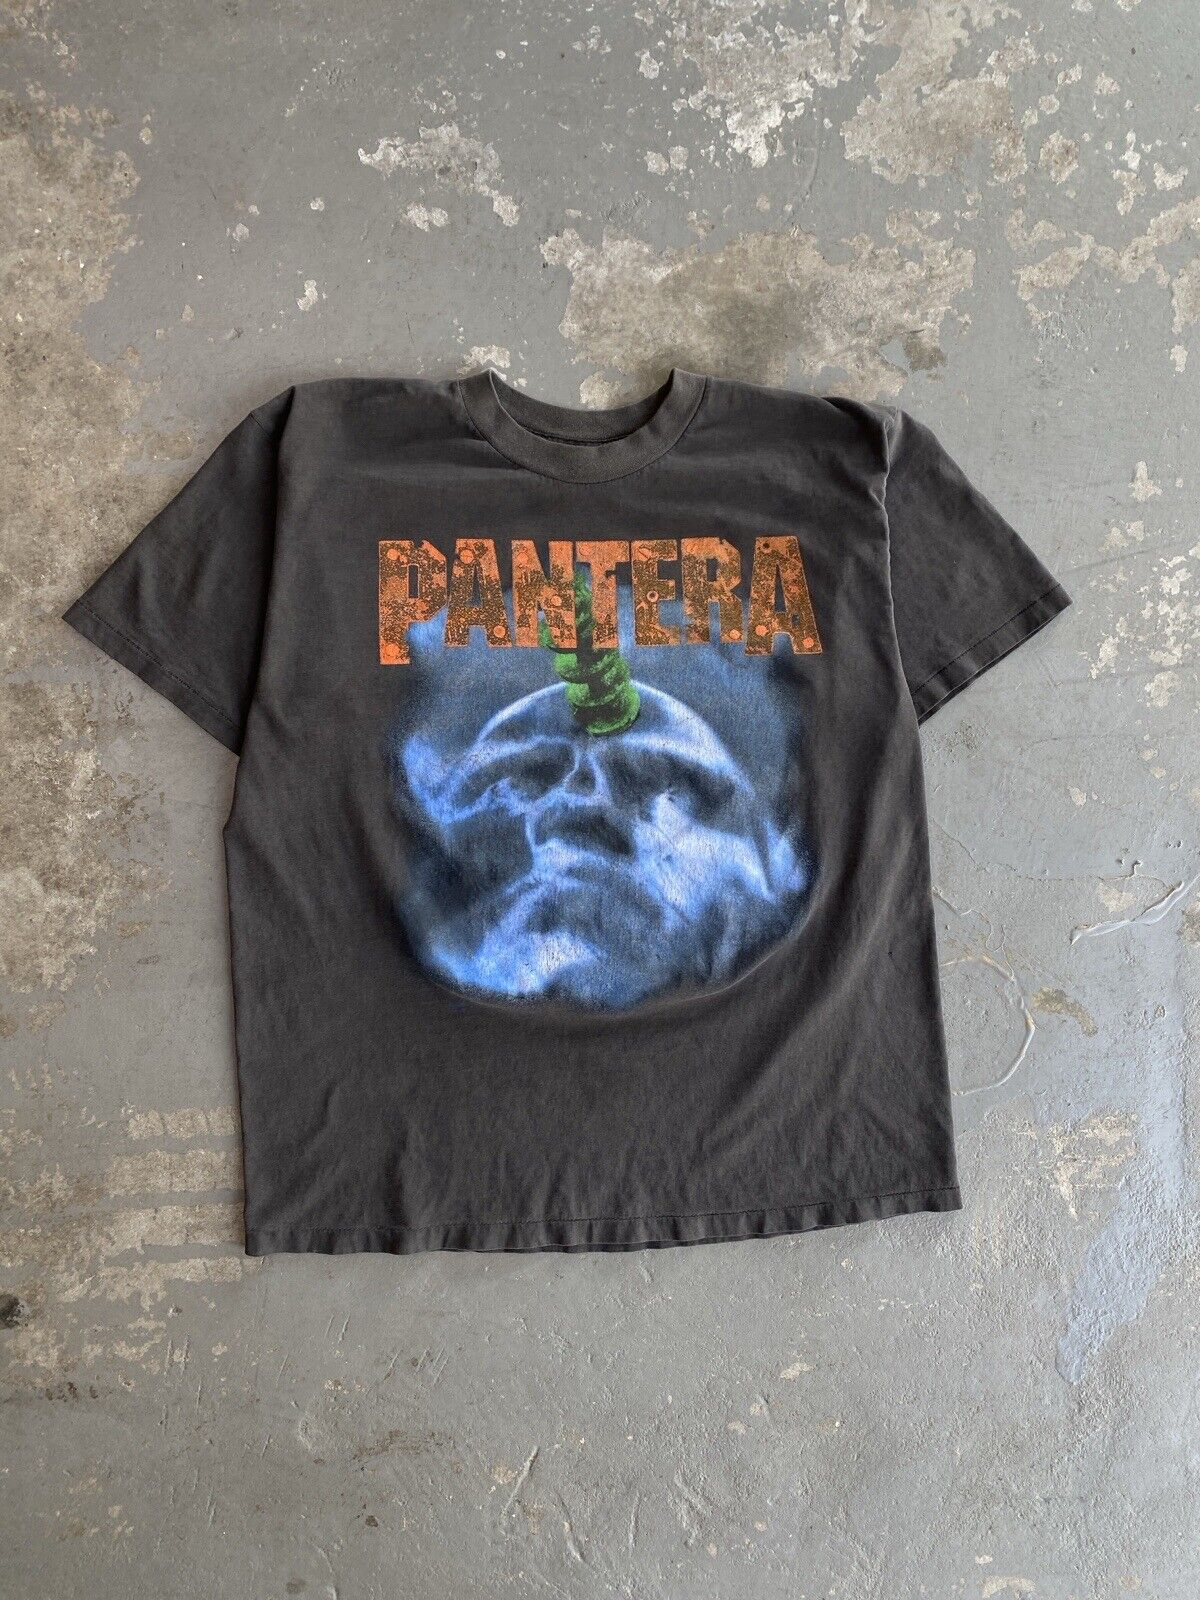 Vintage 1995 Pantera Far Beyond Driven World Tour T Shirt Size XL Winterland tag